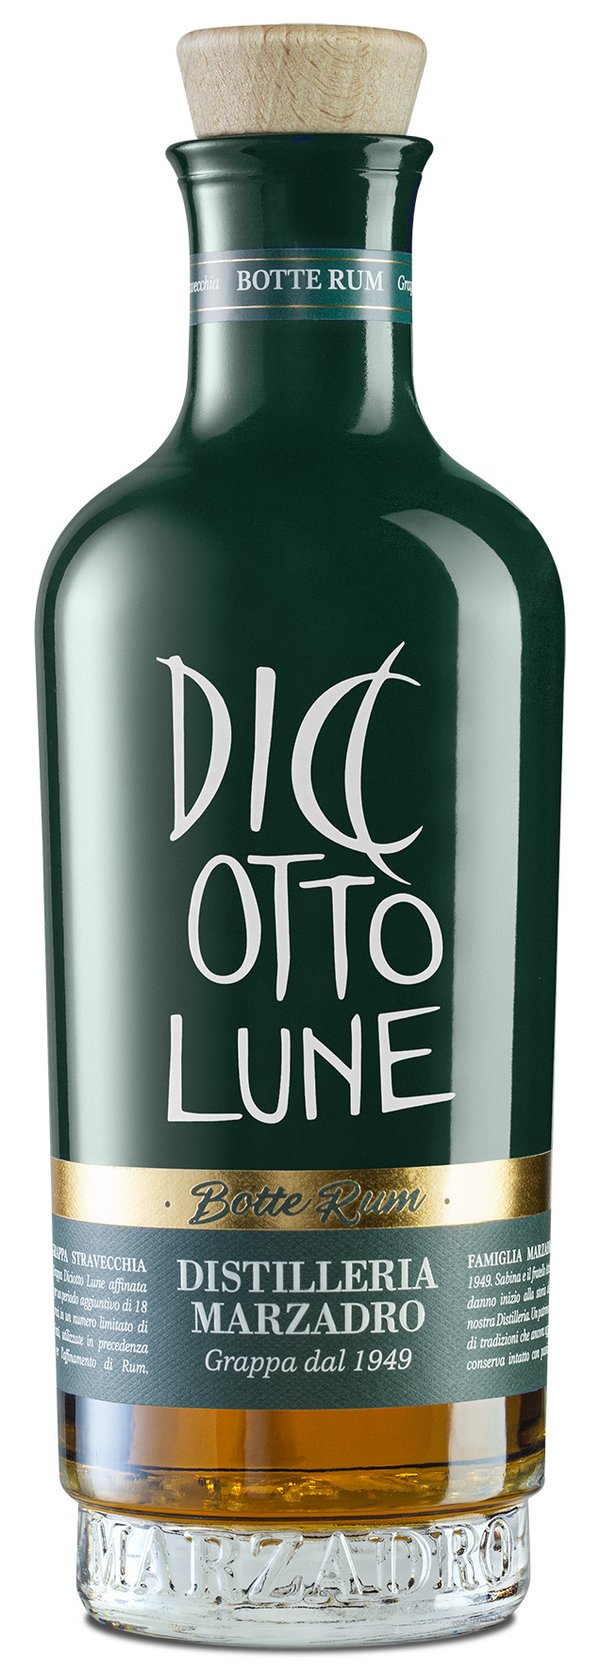 Diciotto Lune Grappa Stravecchia Riserva Botte Rum 0,5l 42% Vol. Marzadro